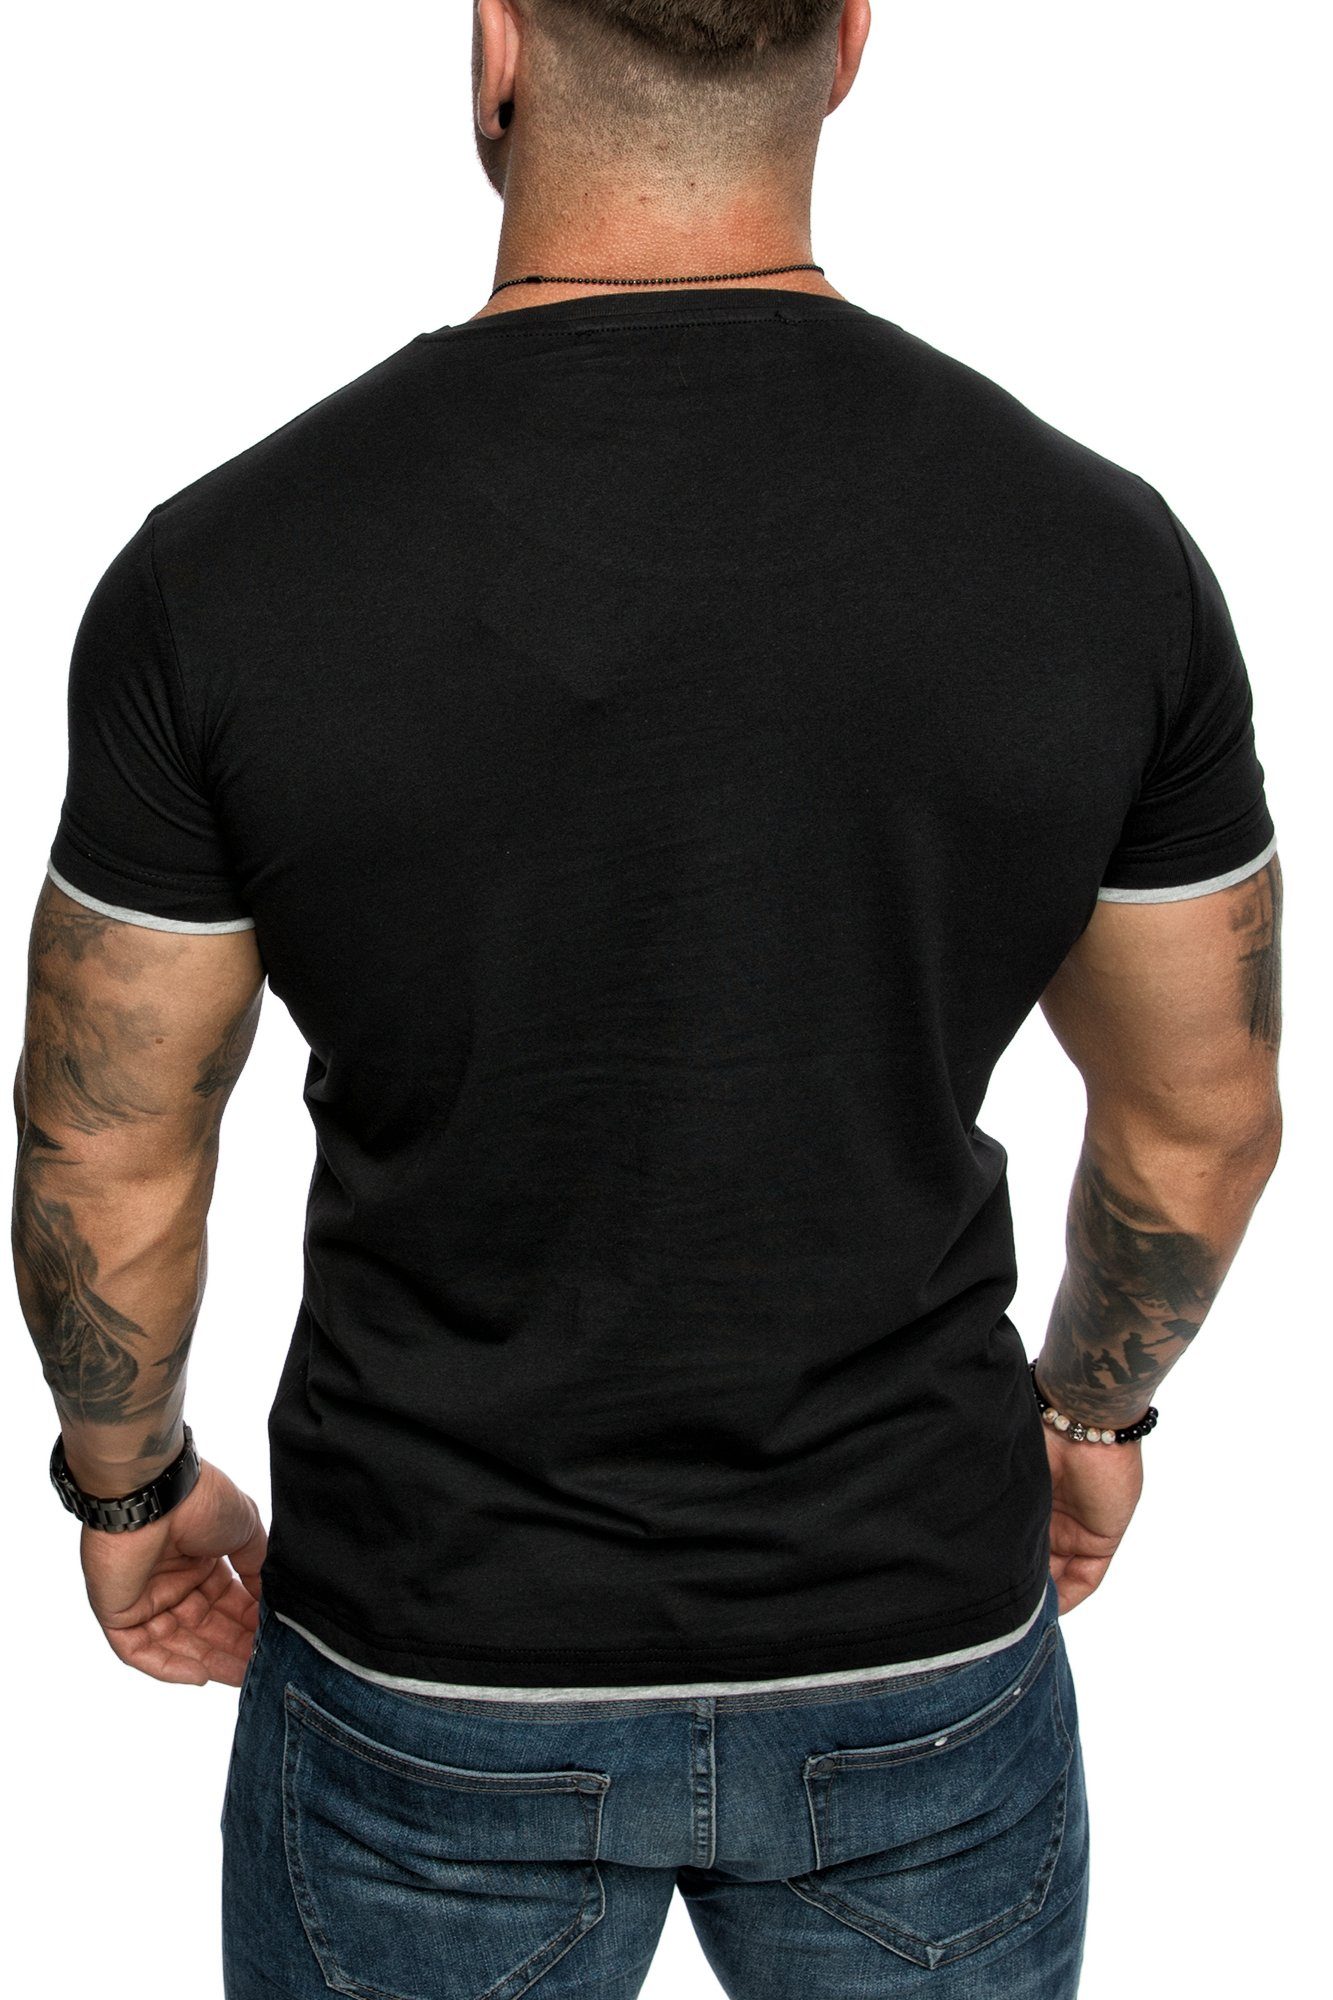 Farbig T-Shirt Slim-Fit Basic Herren Schwarz/Grau Amaci&Sons LAKEWOOD Doppel Shirt mit Rundhalsausschnitt